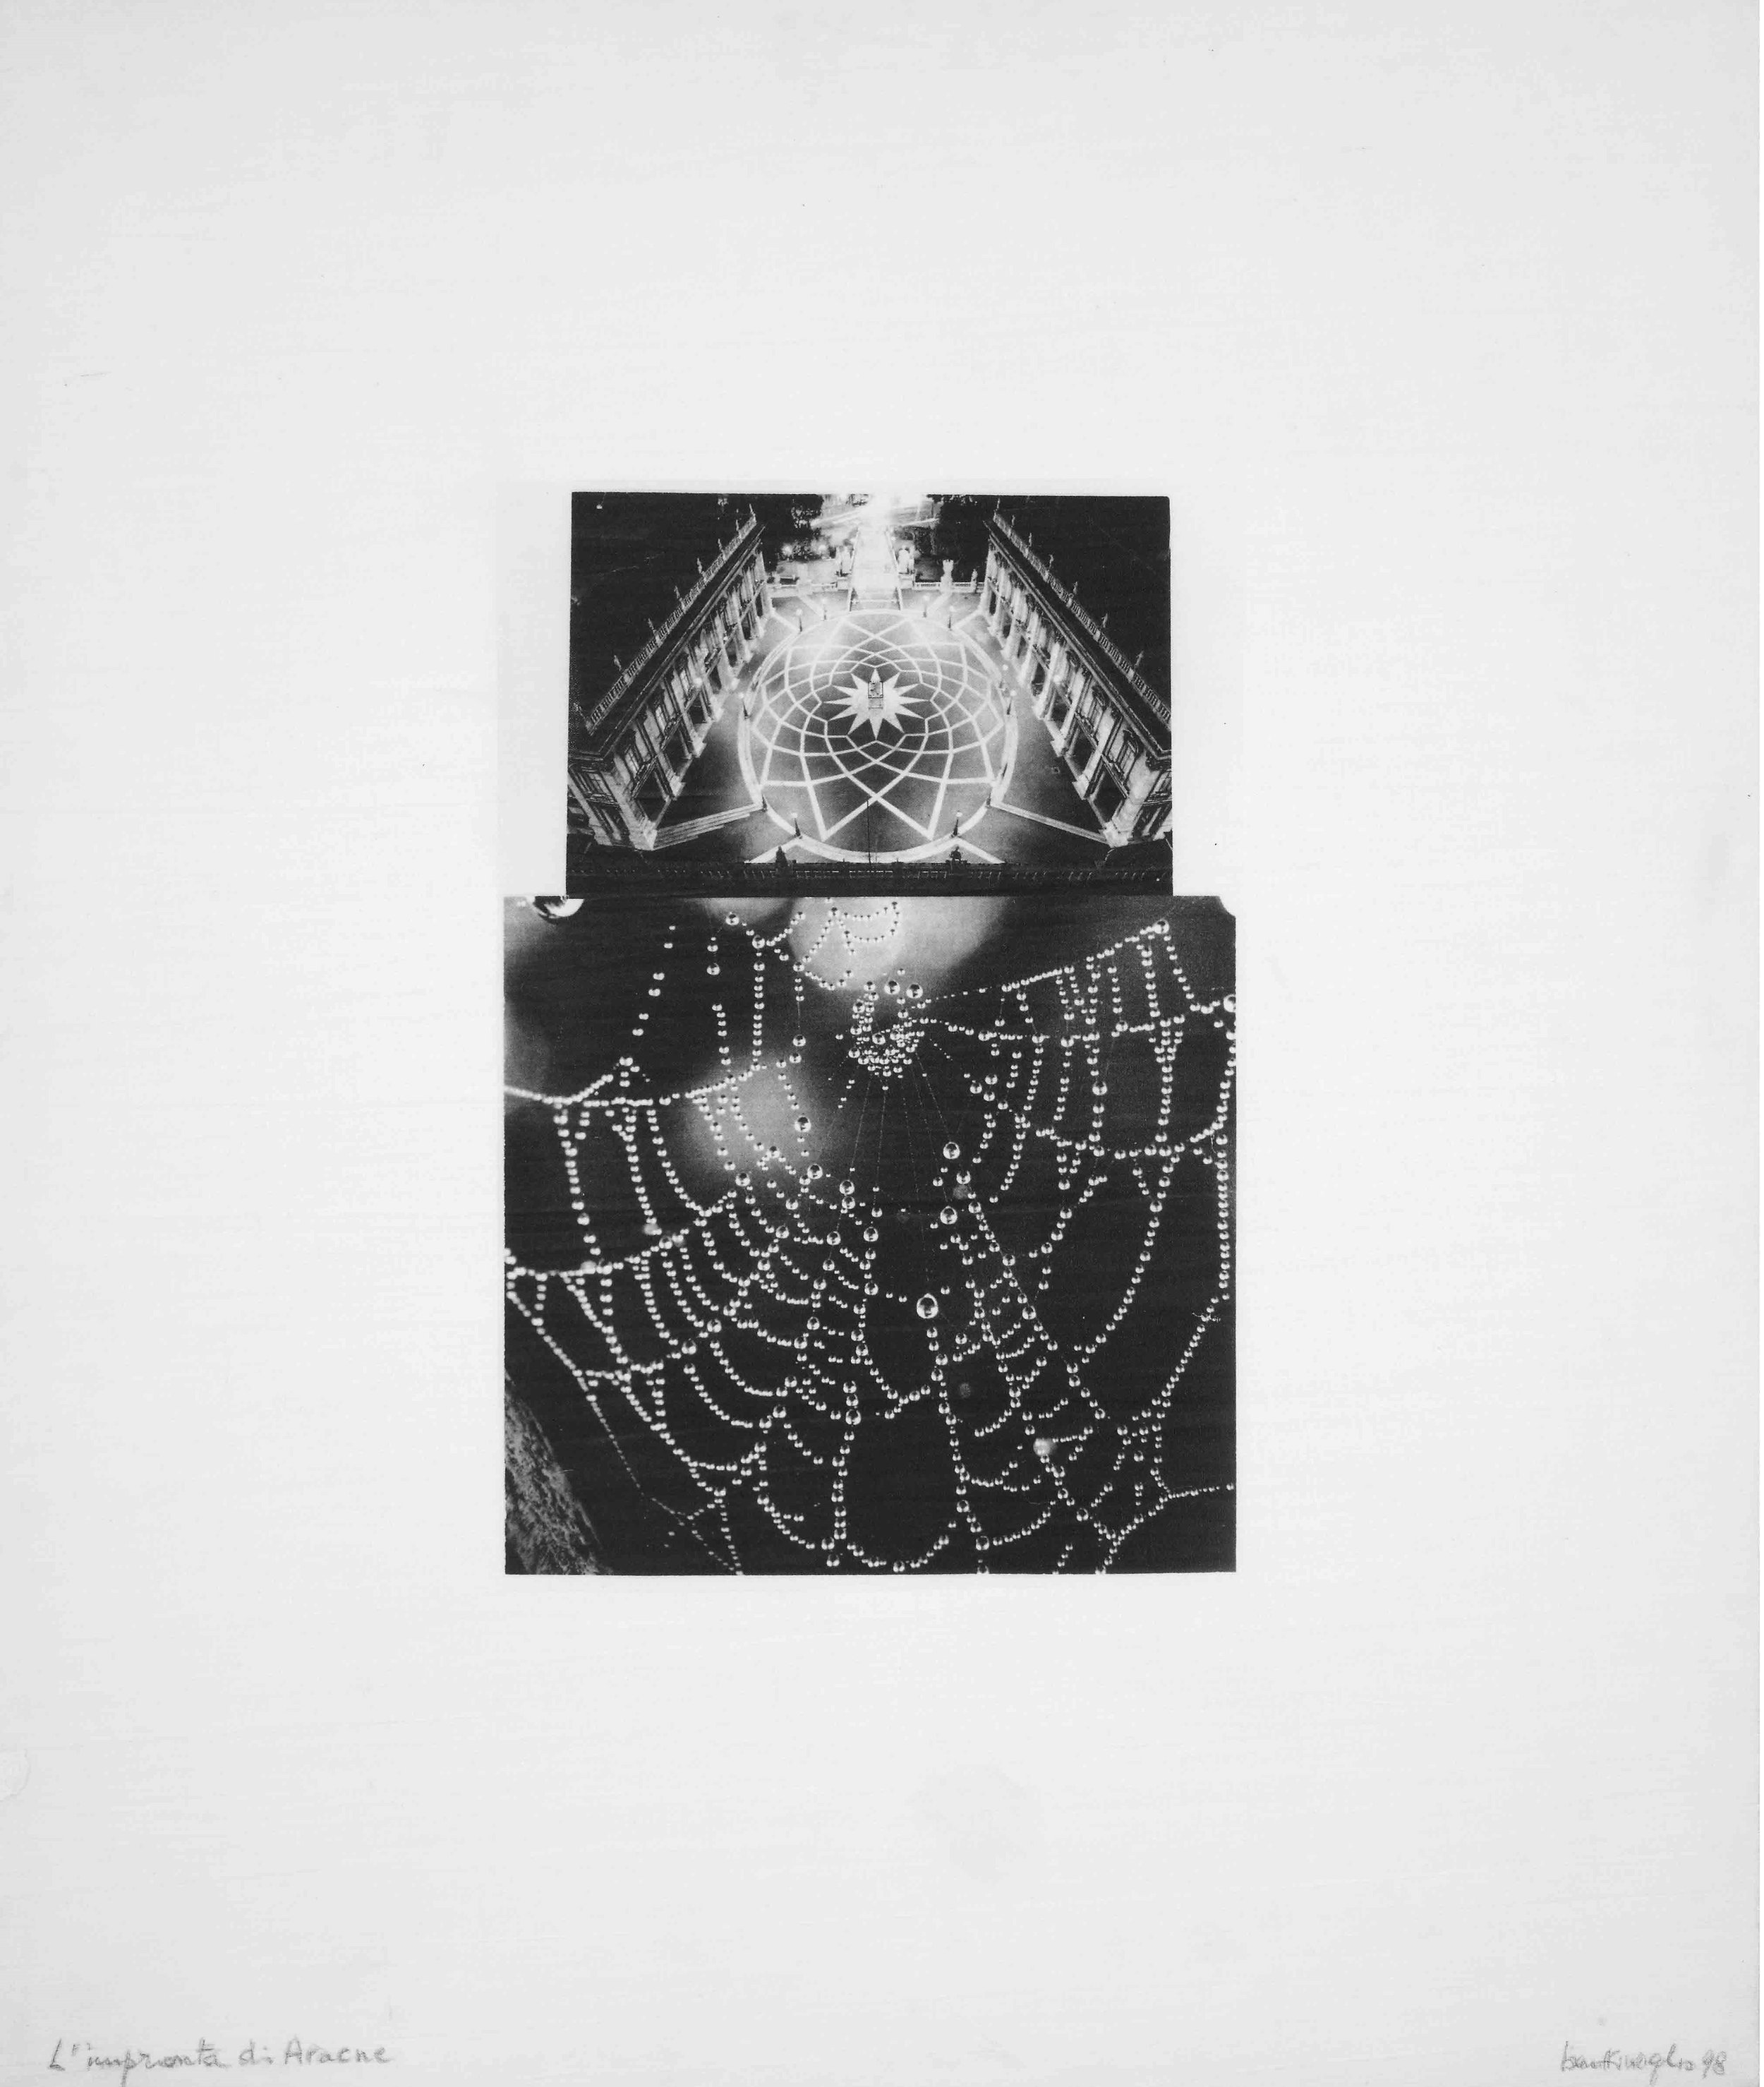 Arachne’s Imprint, 1978 – 1998
Photomechanical print on canvas